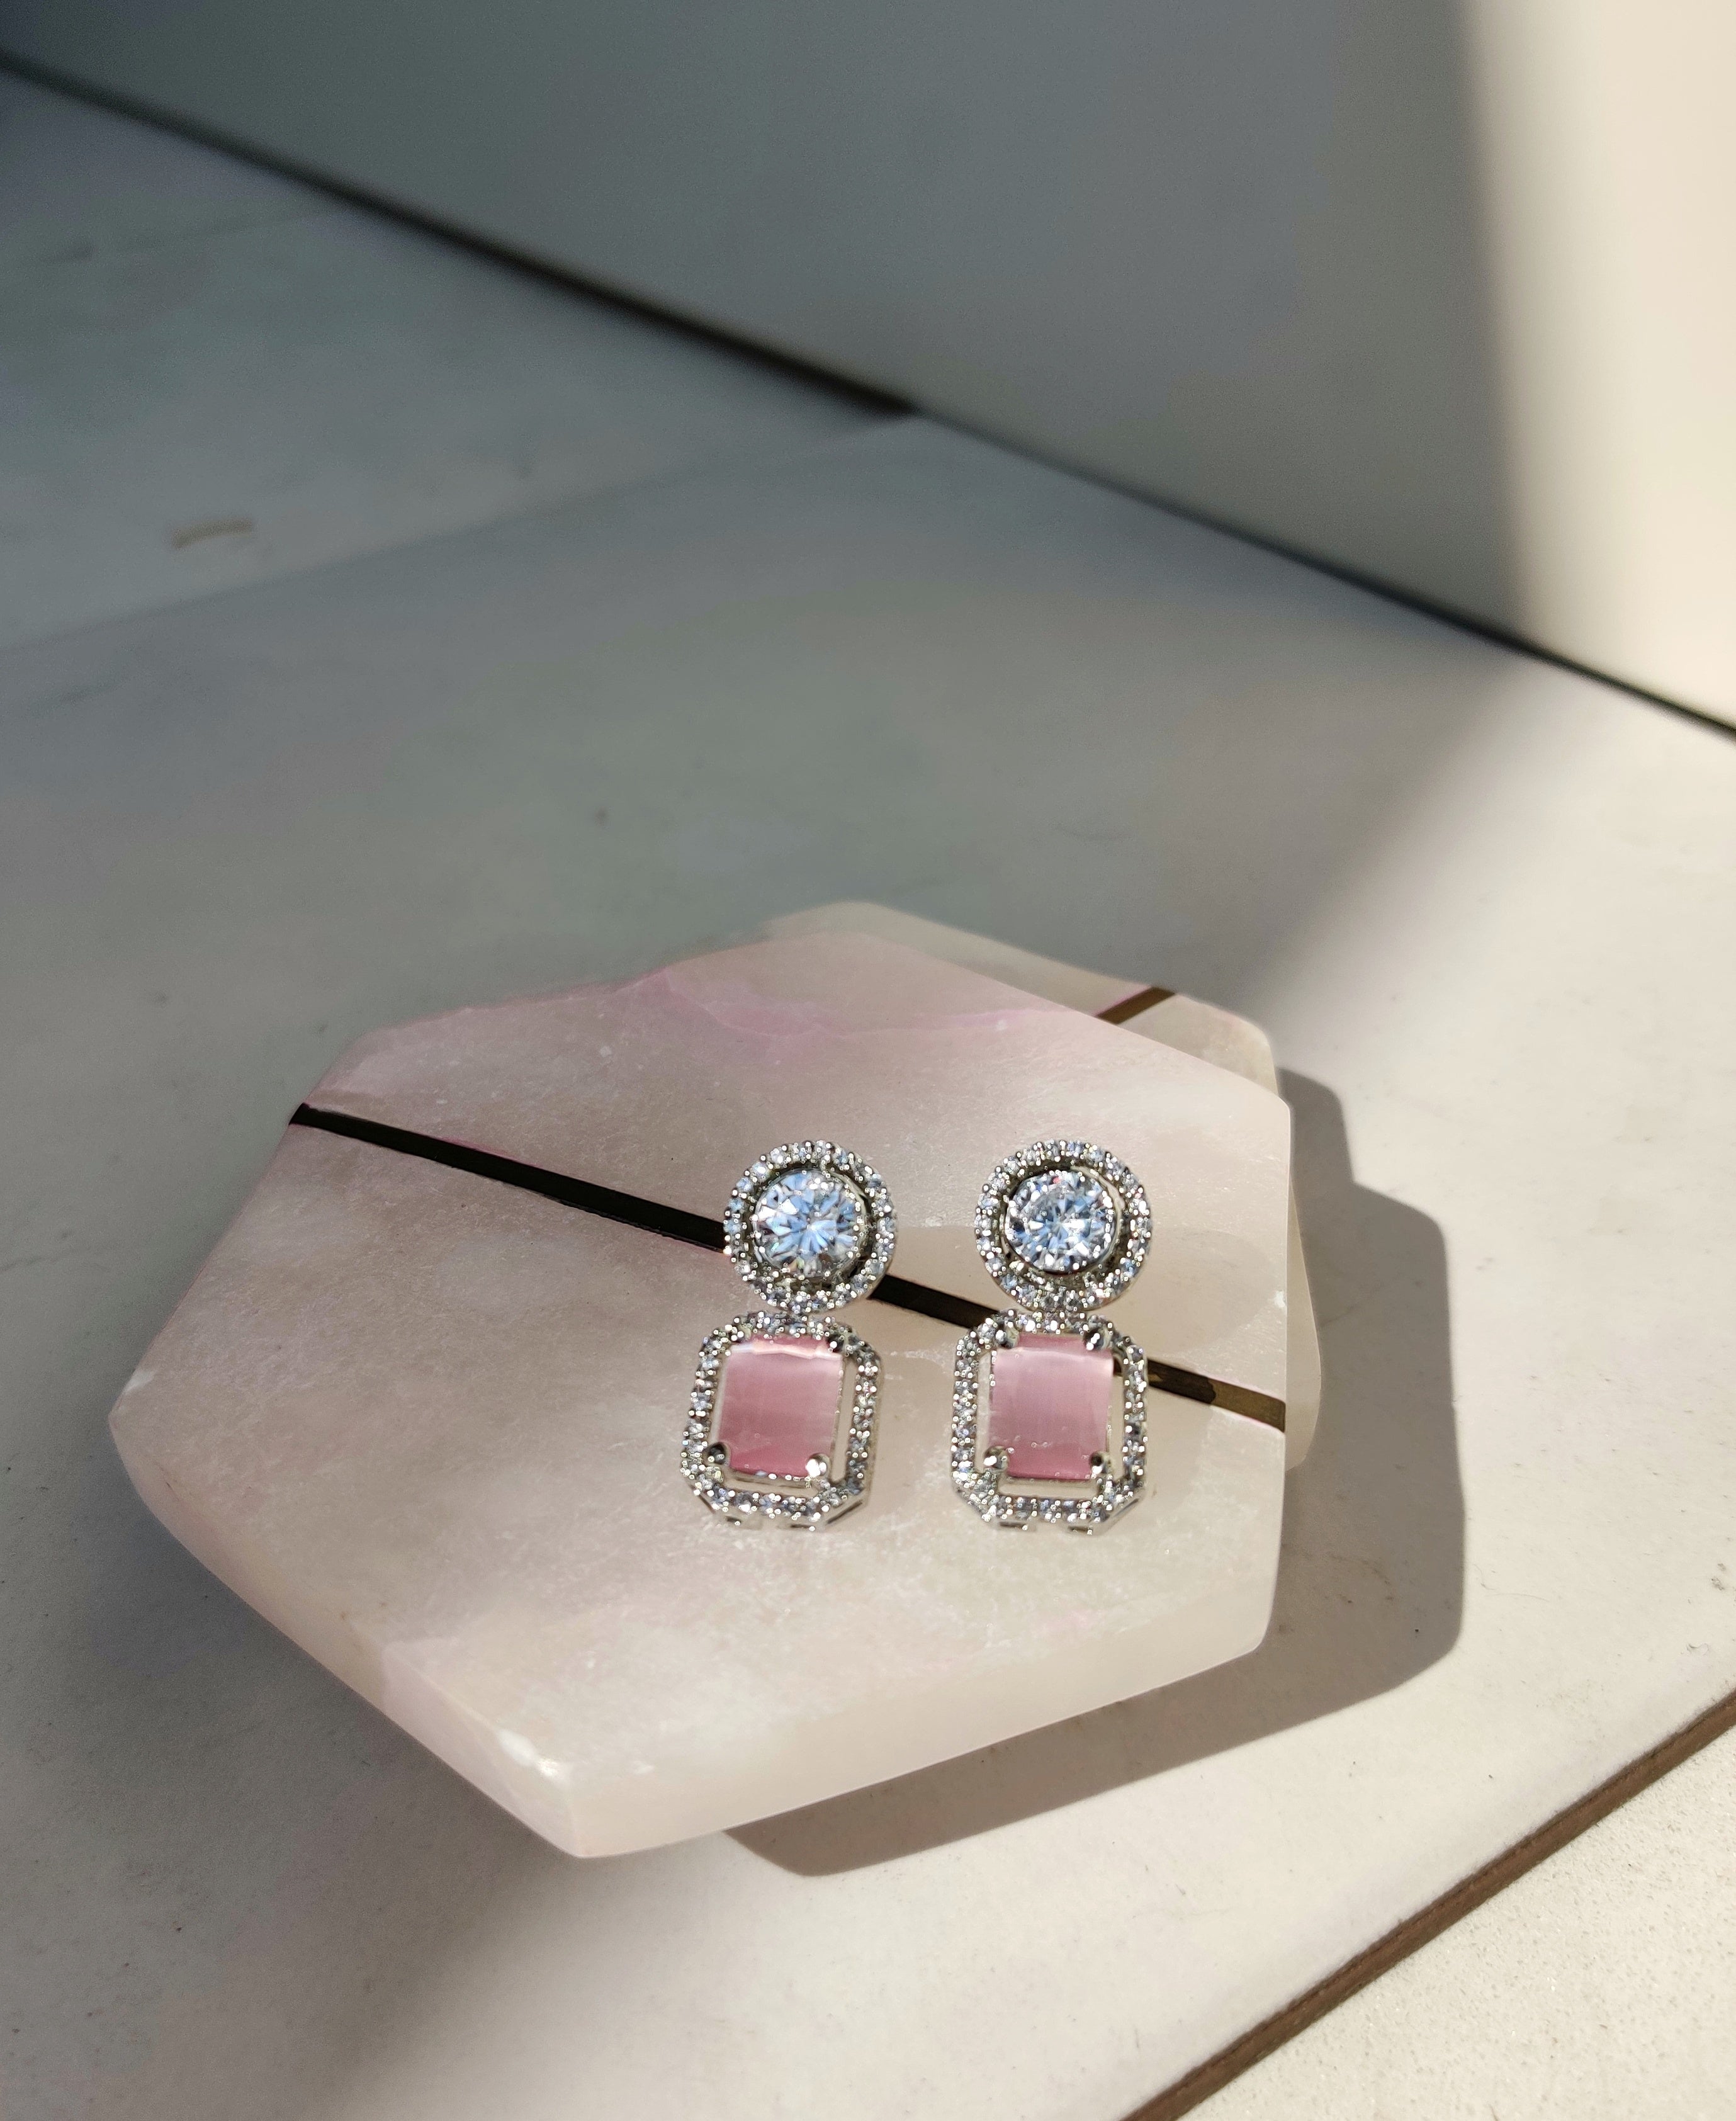 Begum Earrings (Baby Pink)